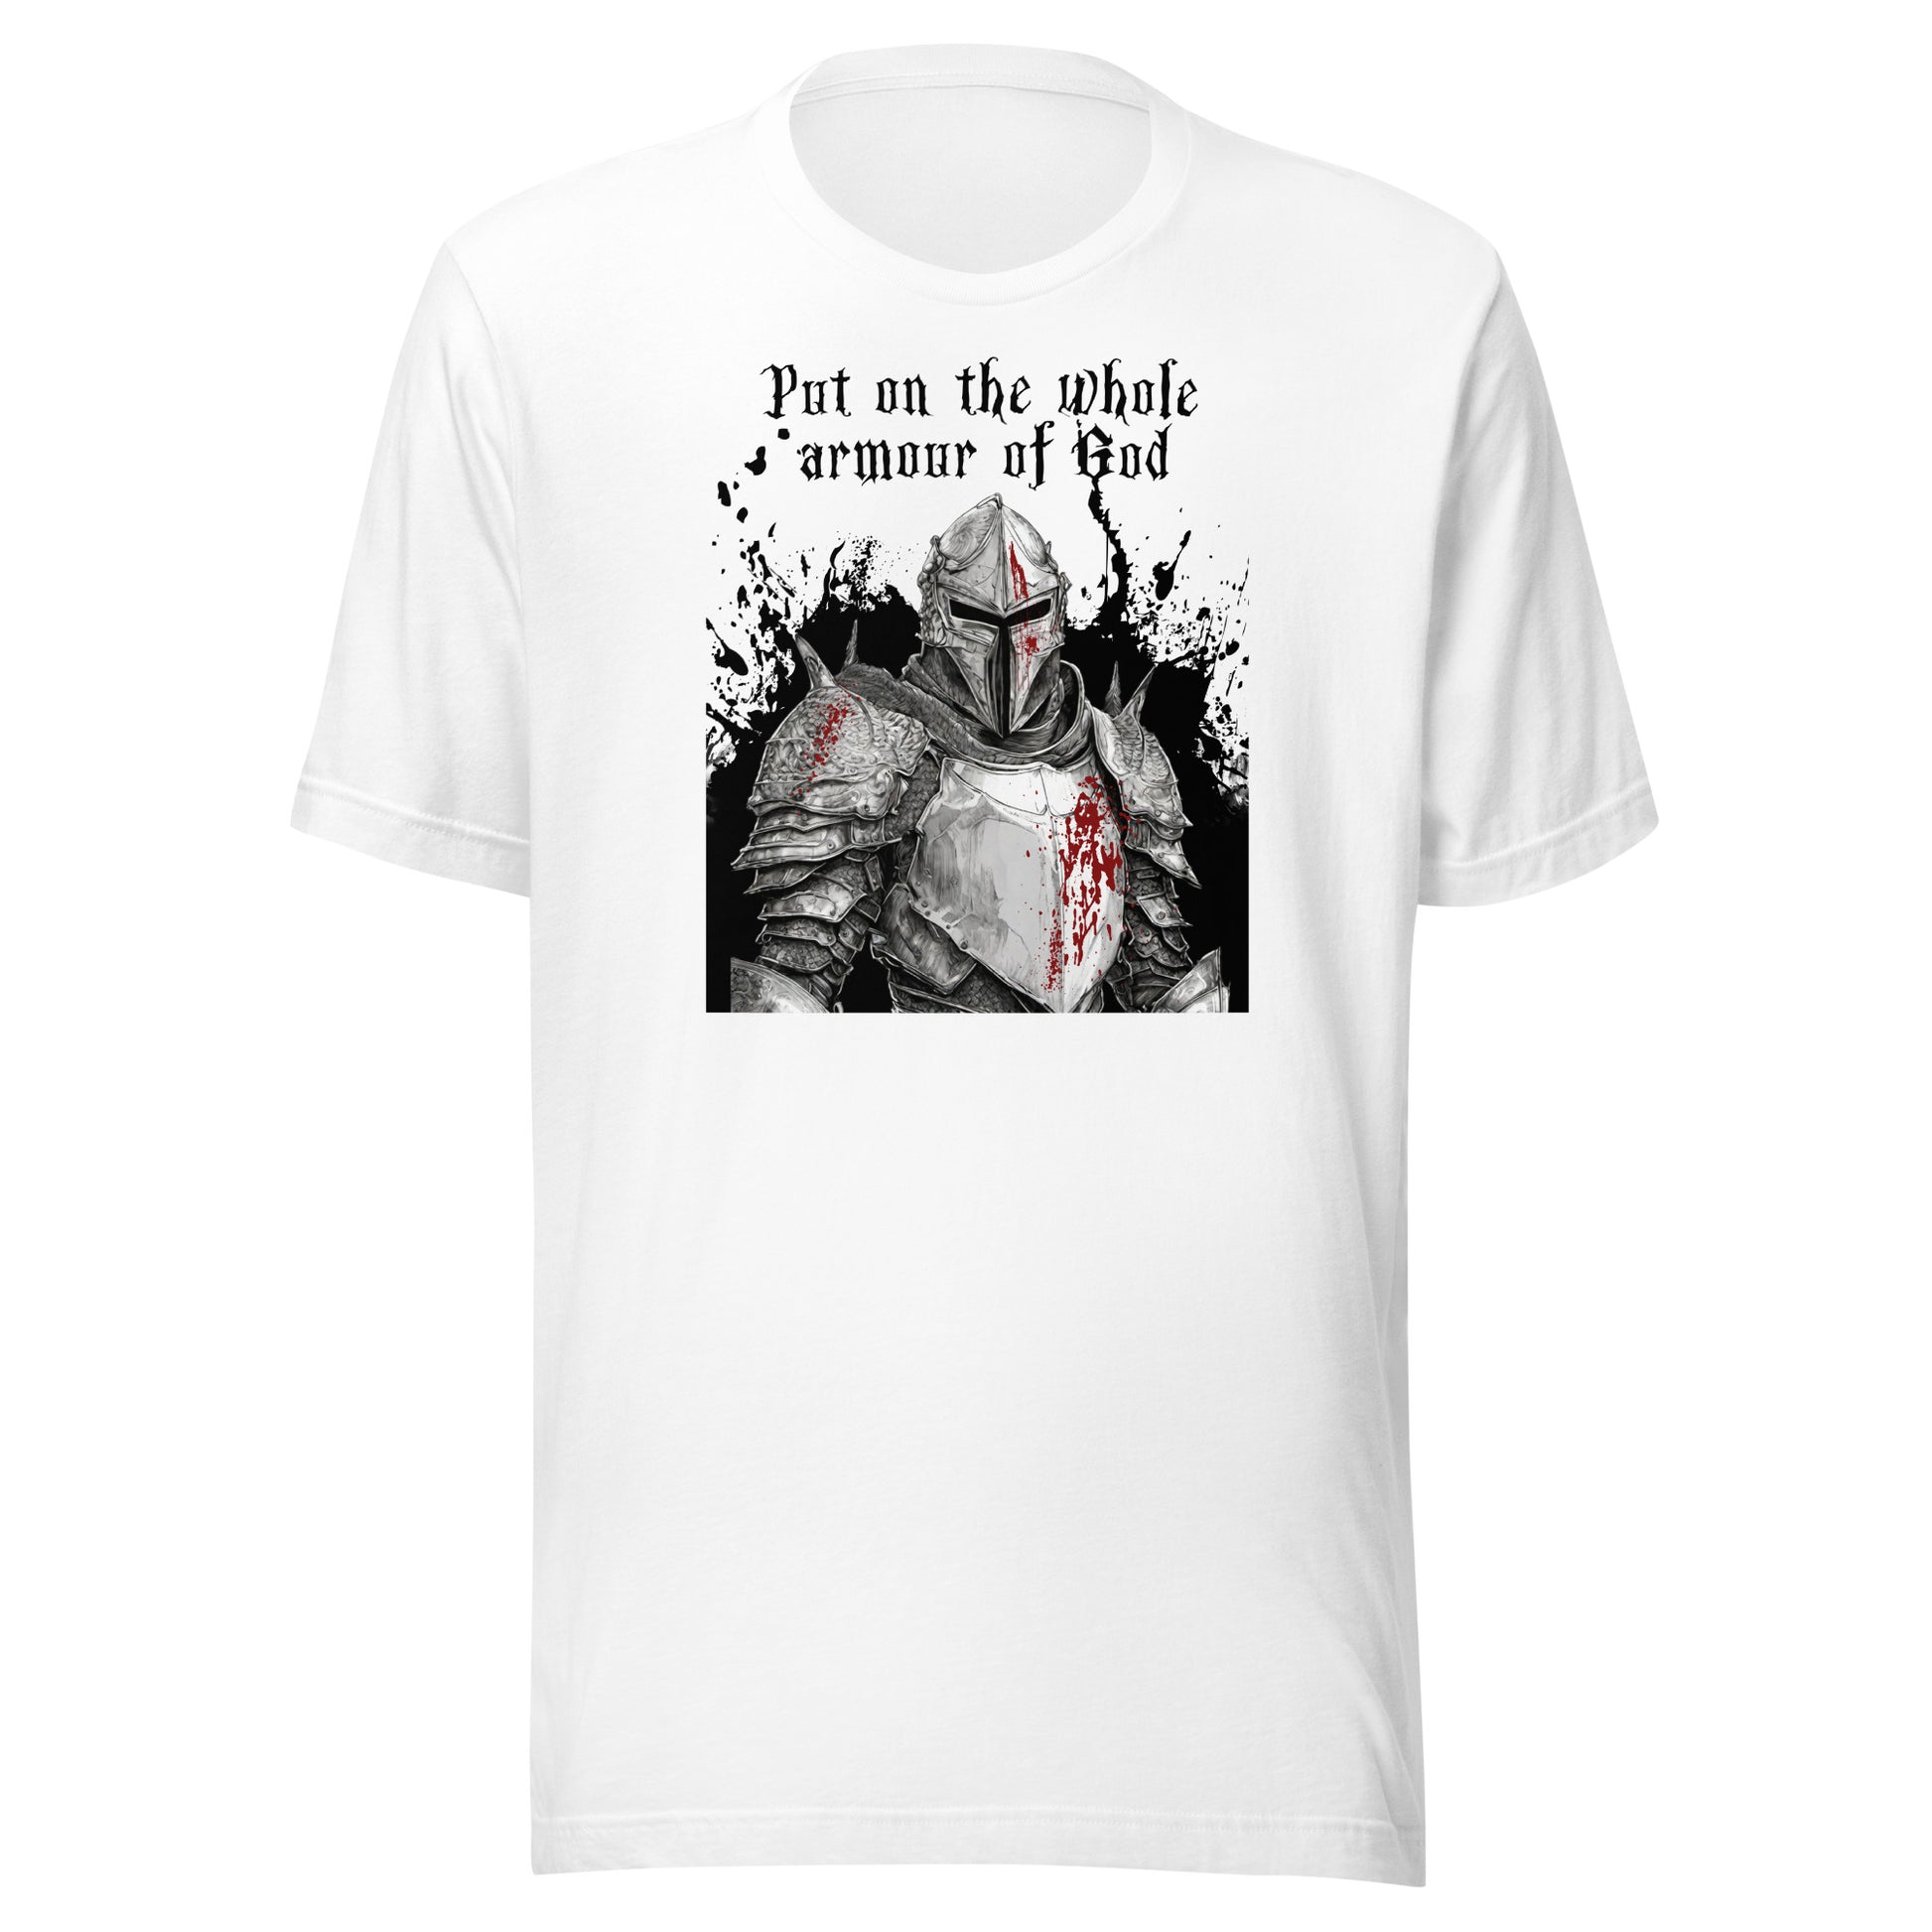 Armor of God Men's Christian T-Shirt White